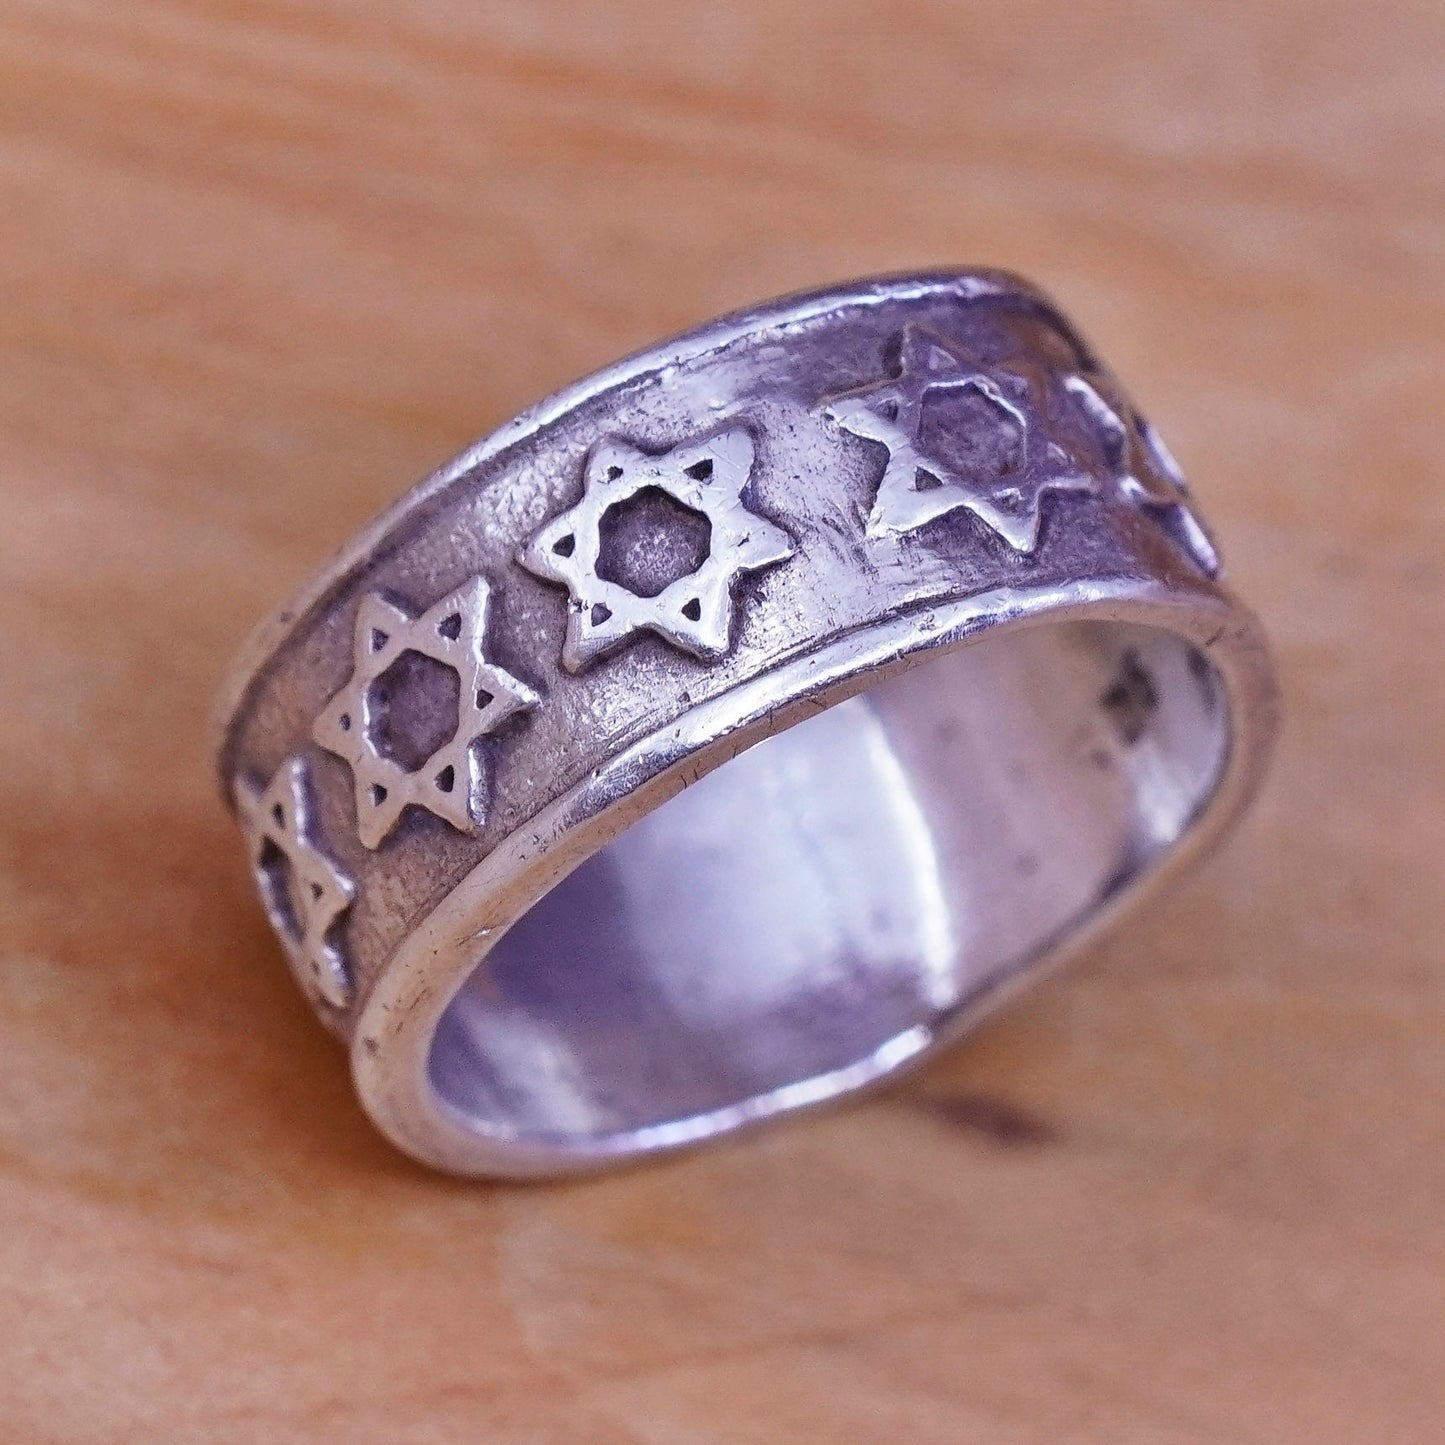 Size 4.75, vtg hopi Sterling silver handmade ring 925 relief star hexagram band